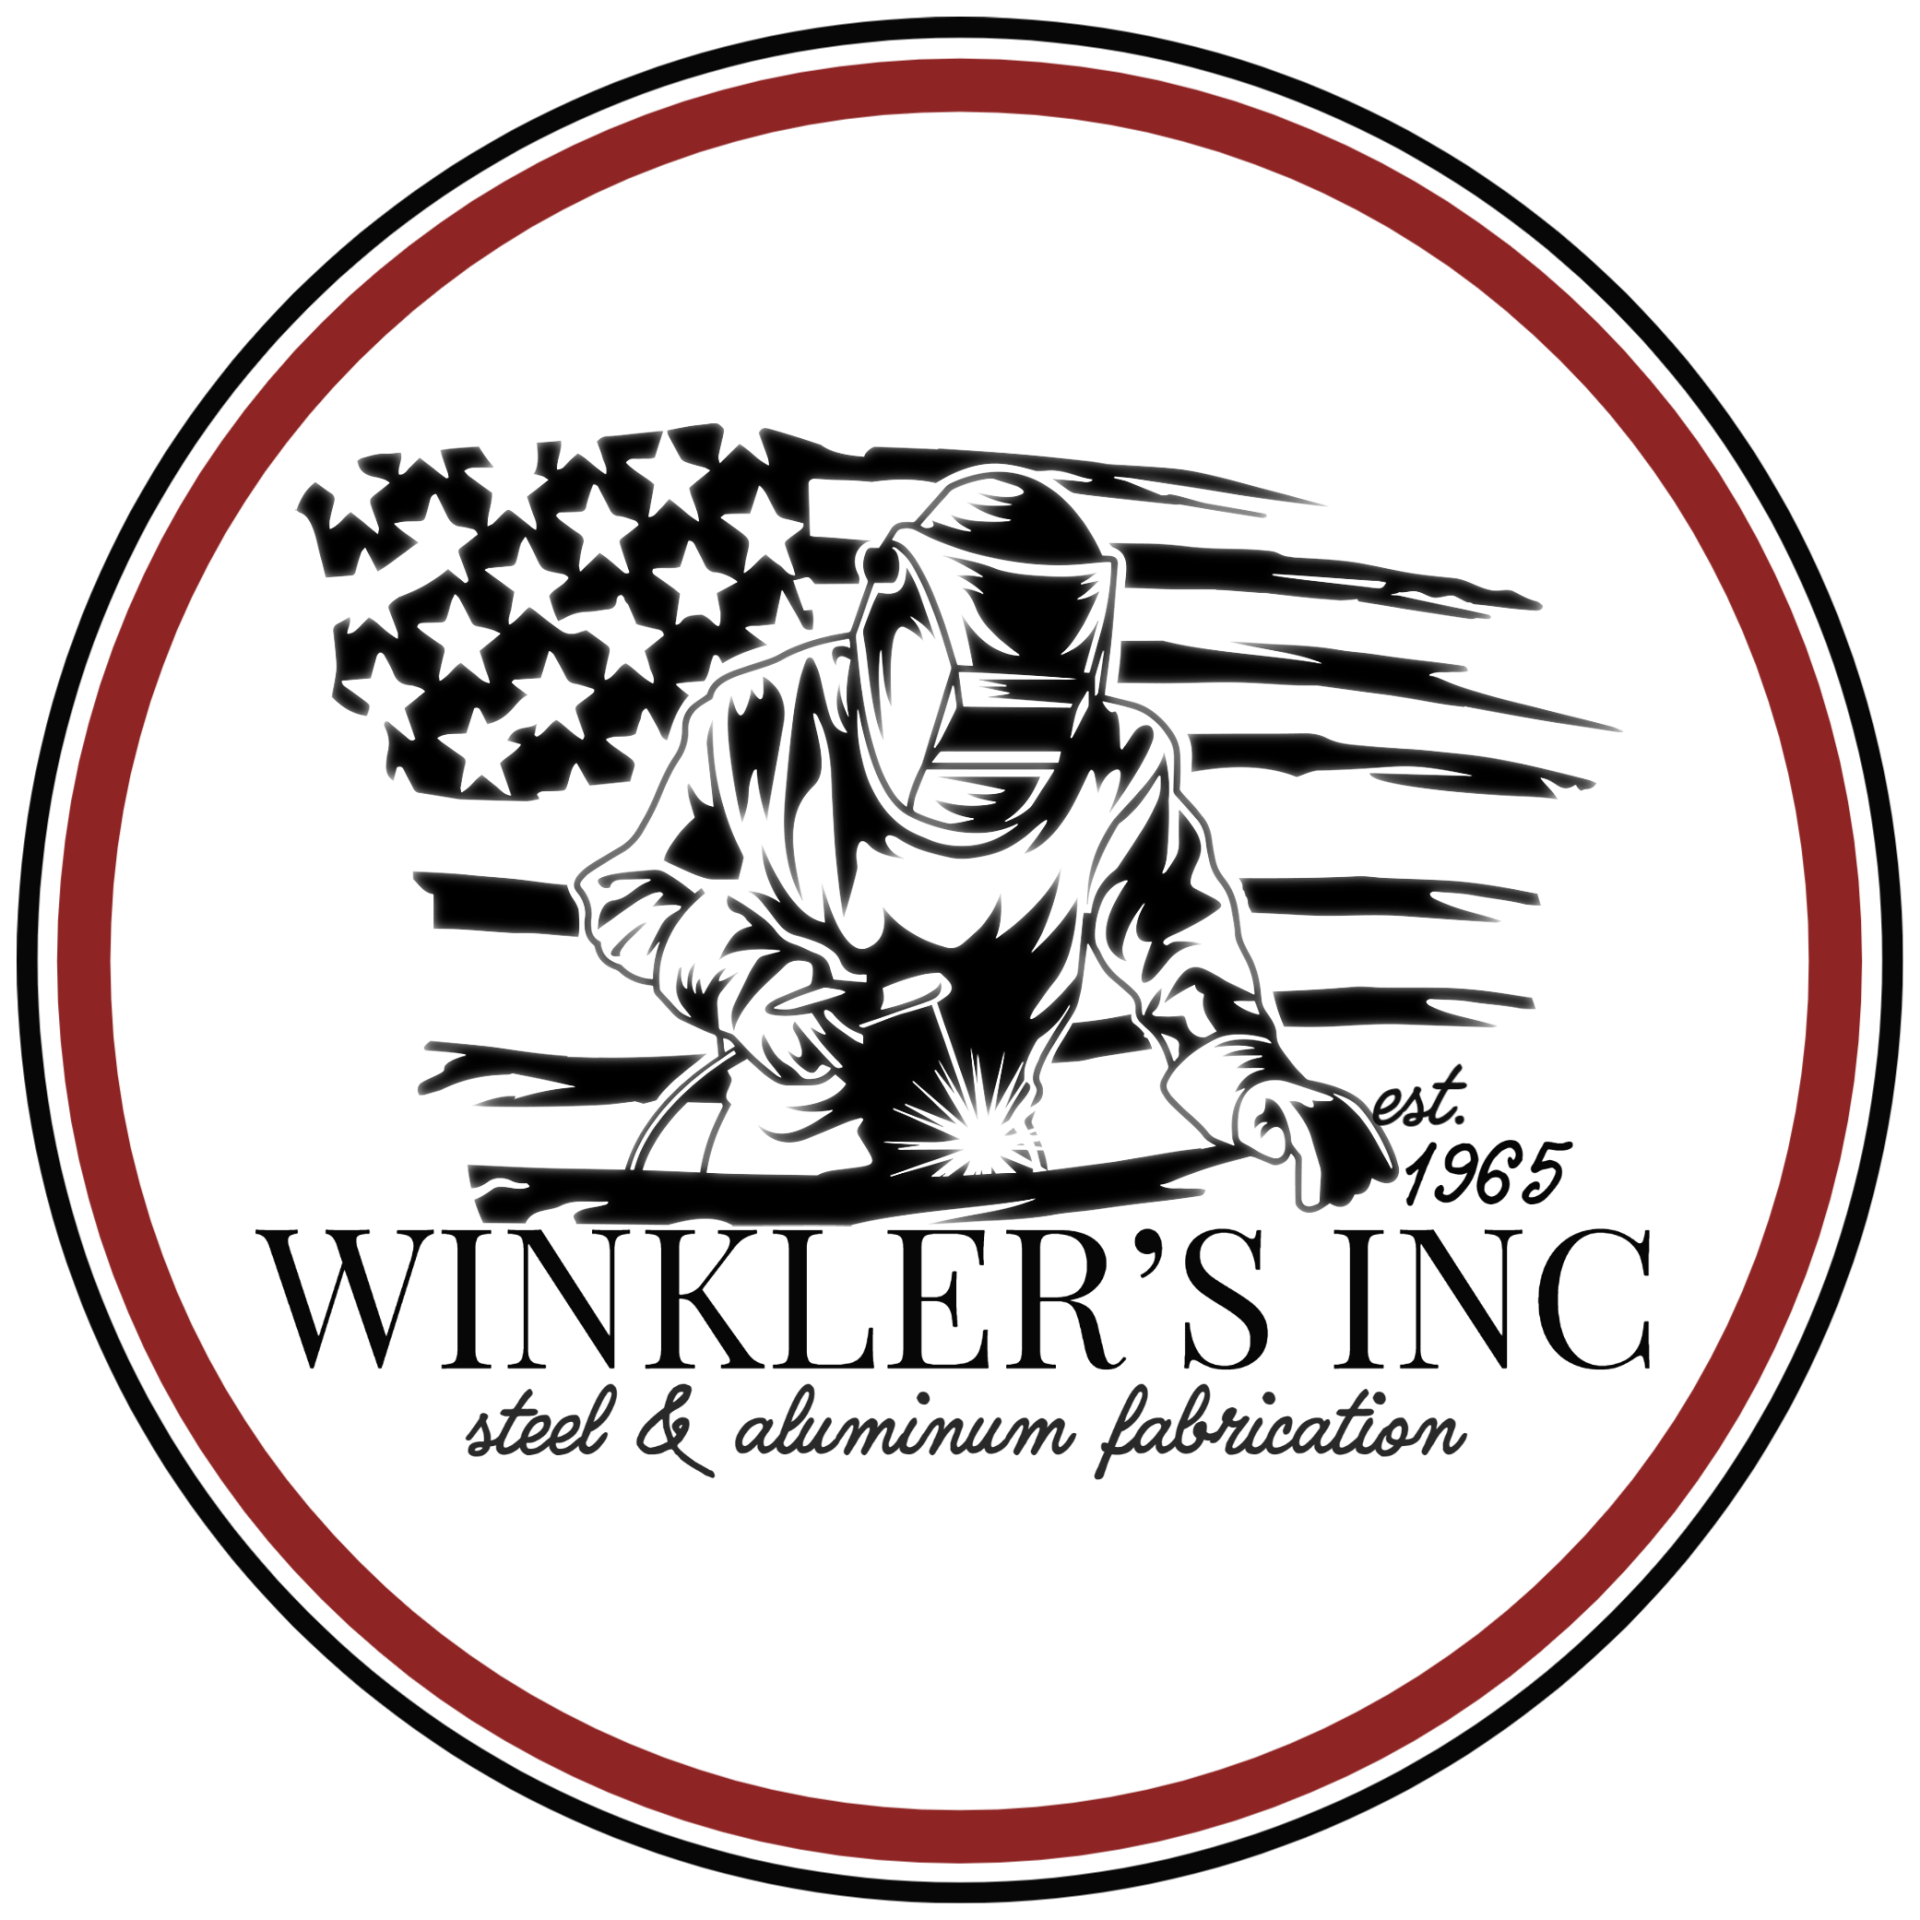 Winkler's Inc